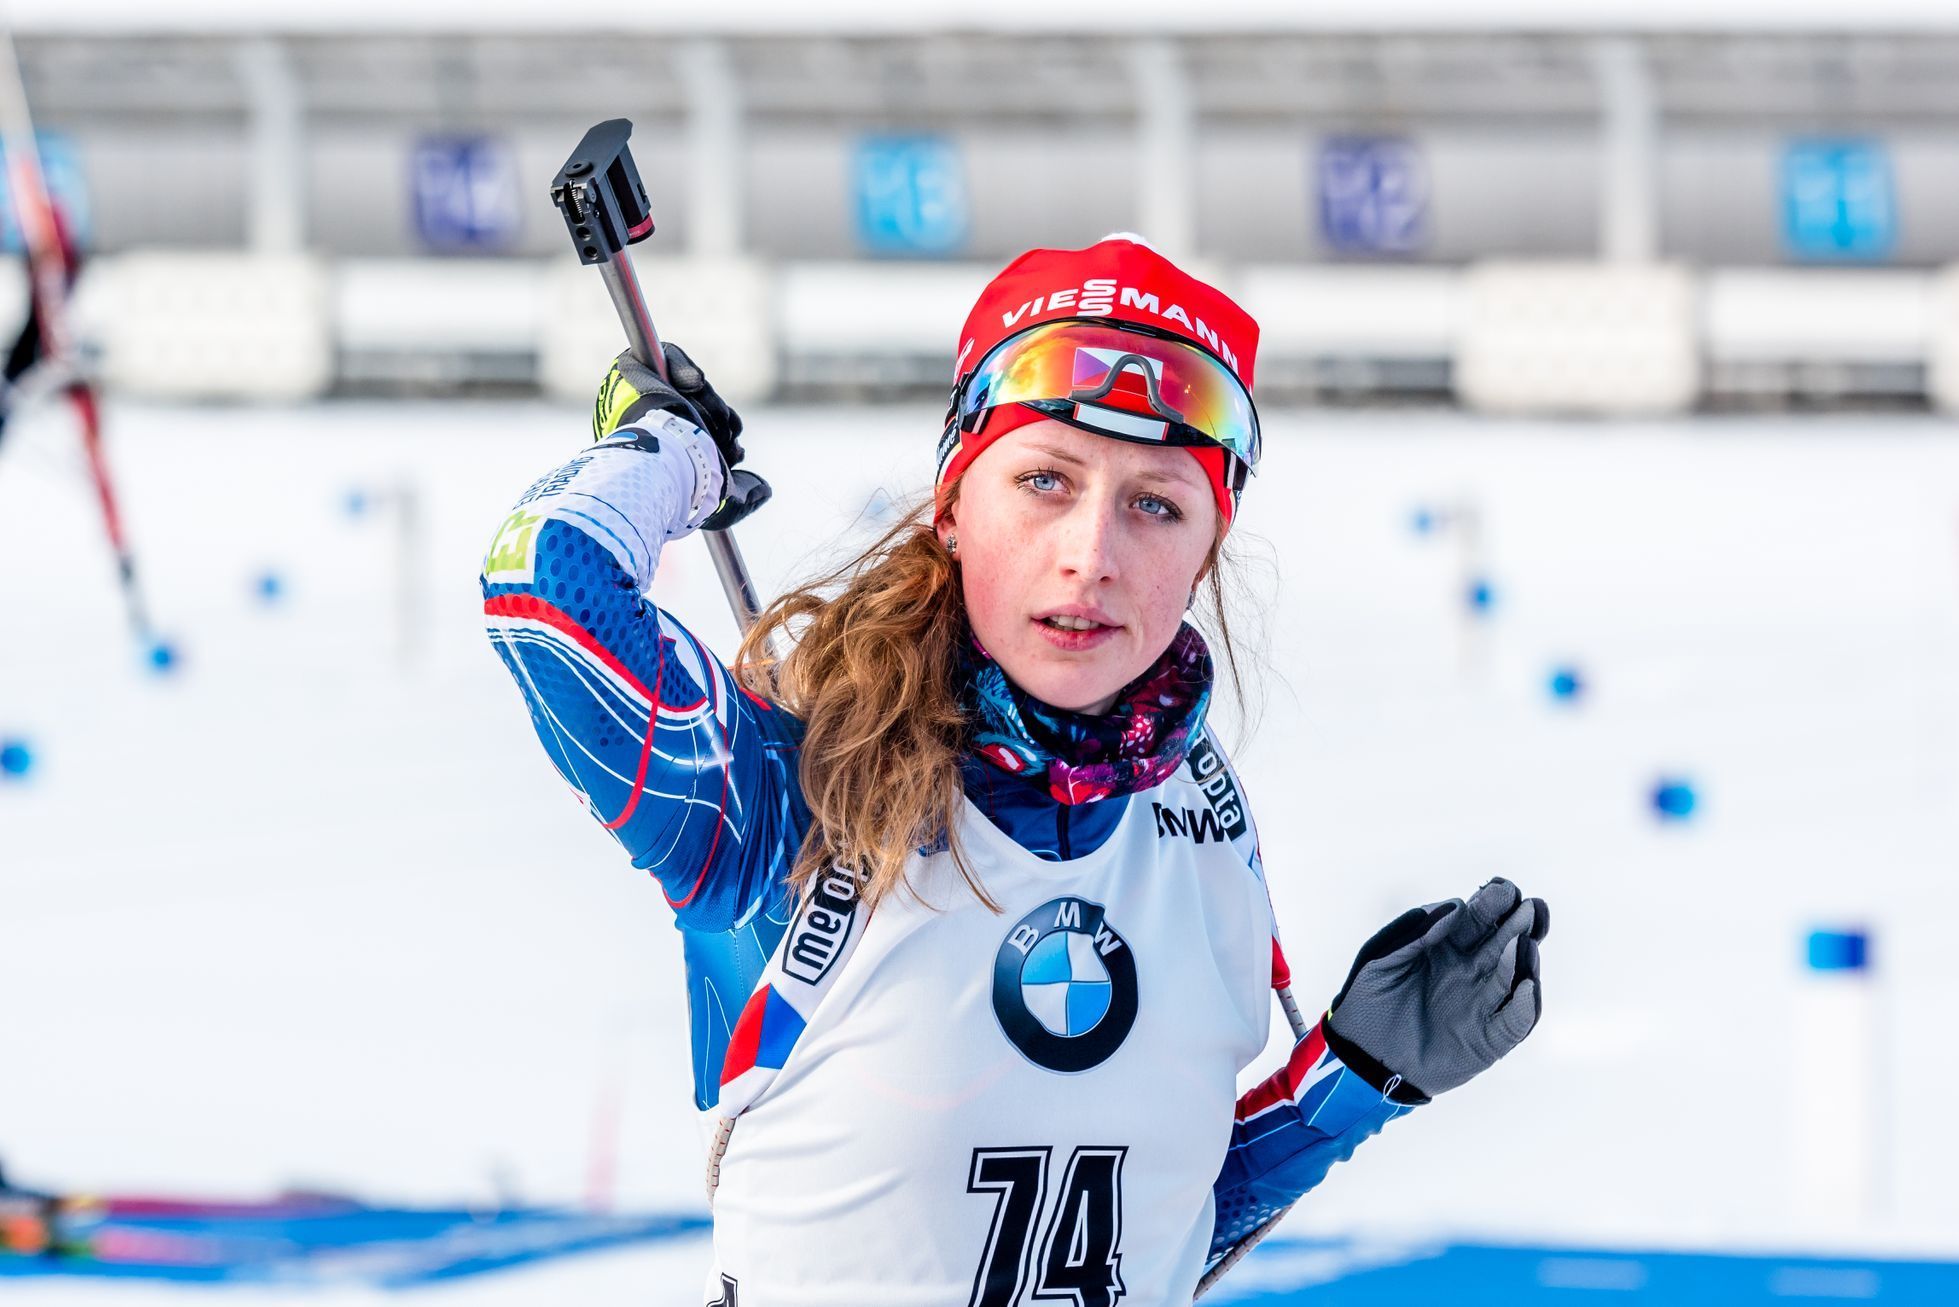 Sprint žen v Oberhofu 2017